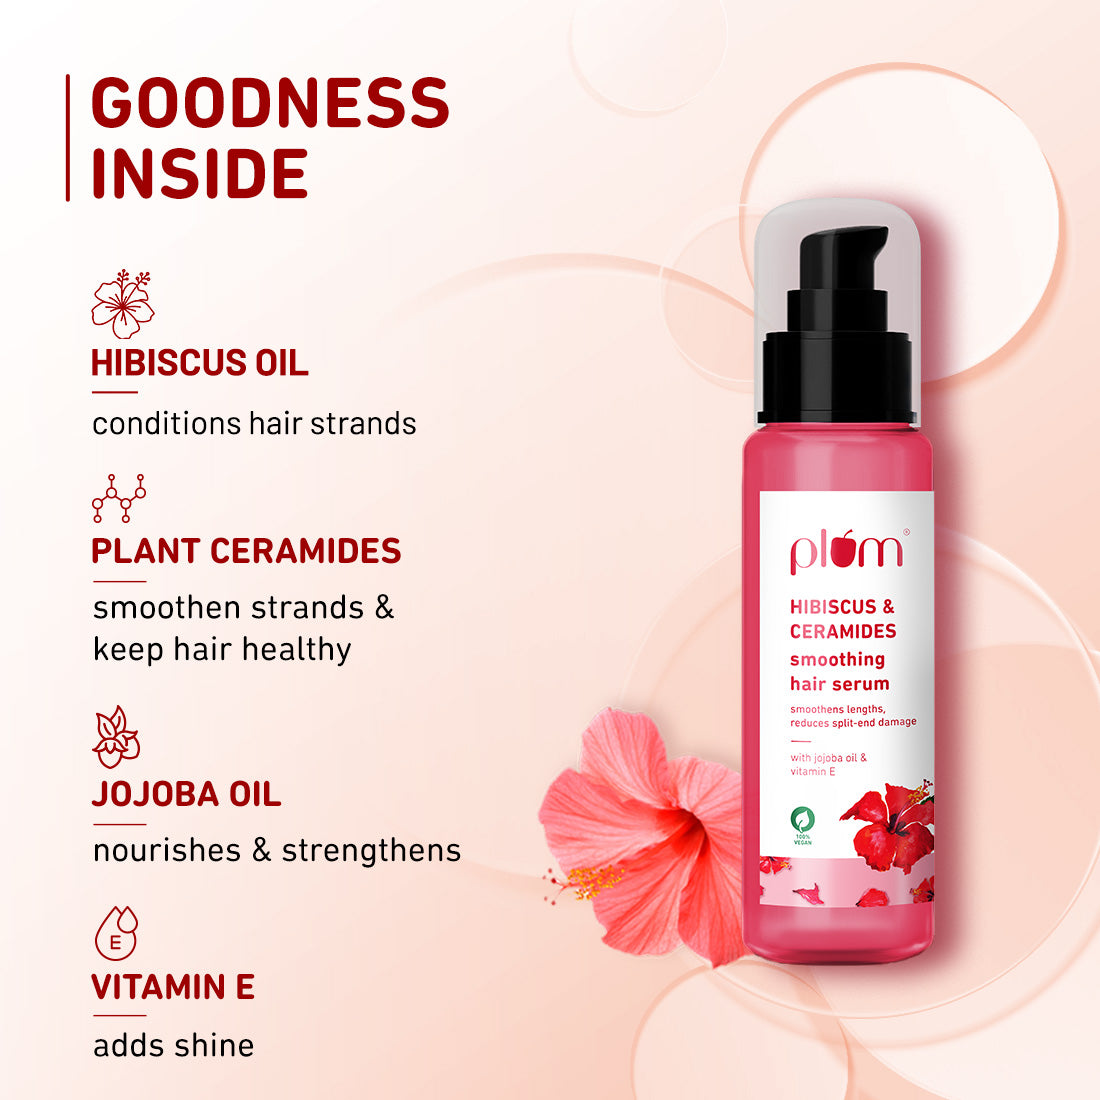 Hibiscus & Ceramides Smoothing Hair Serum